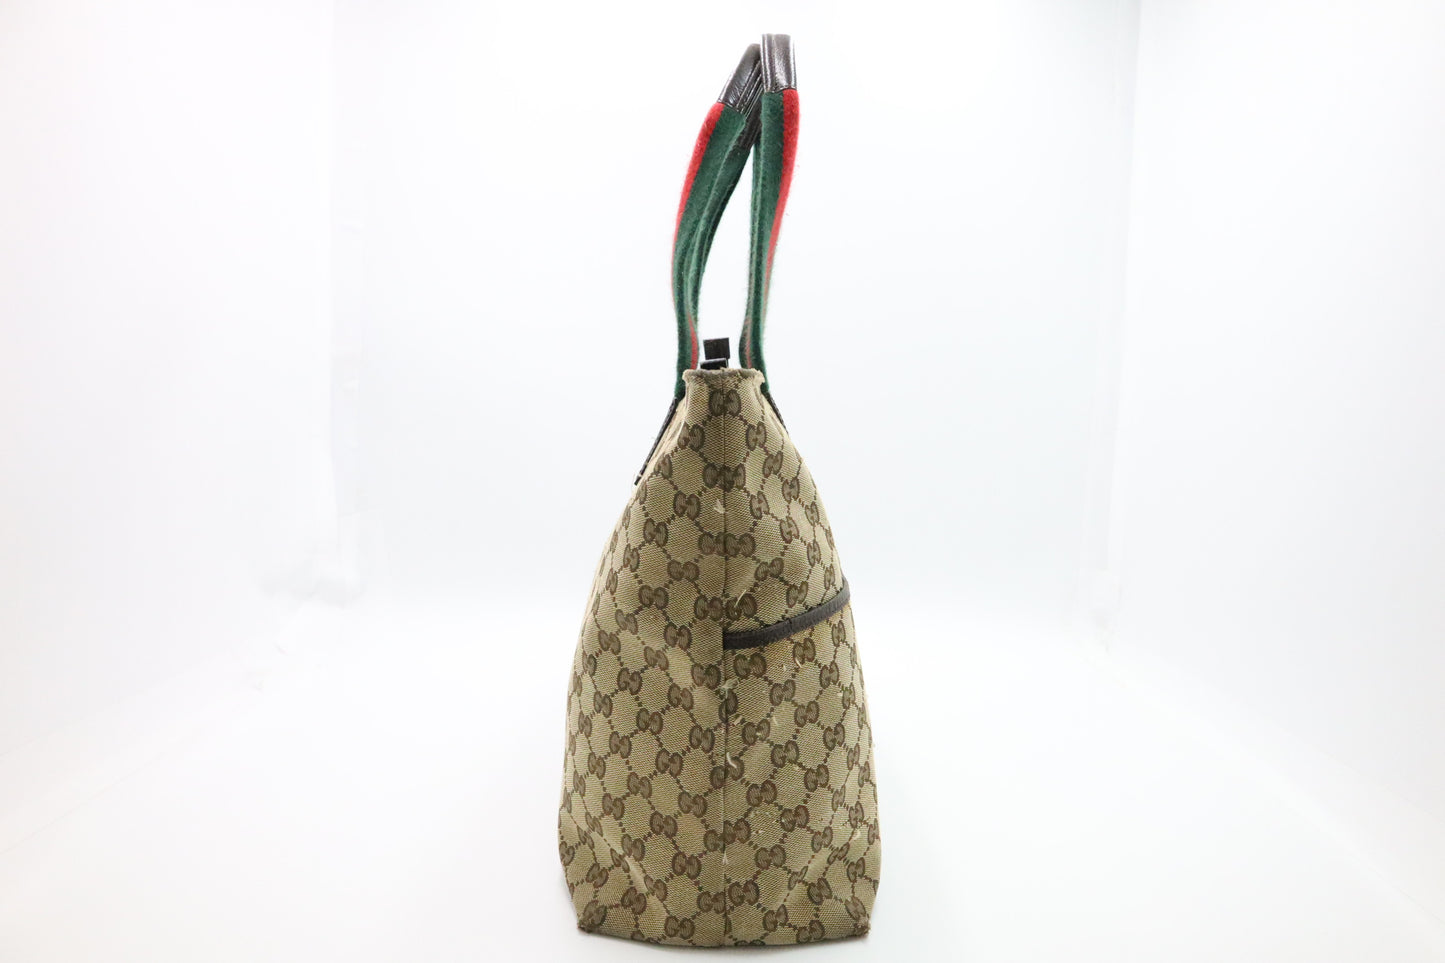 Gucci Sherry Tote Bag in GG Supreme Canvas